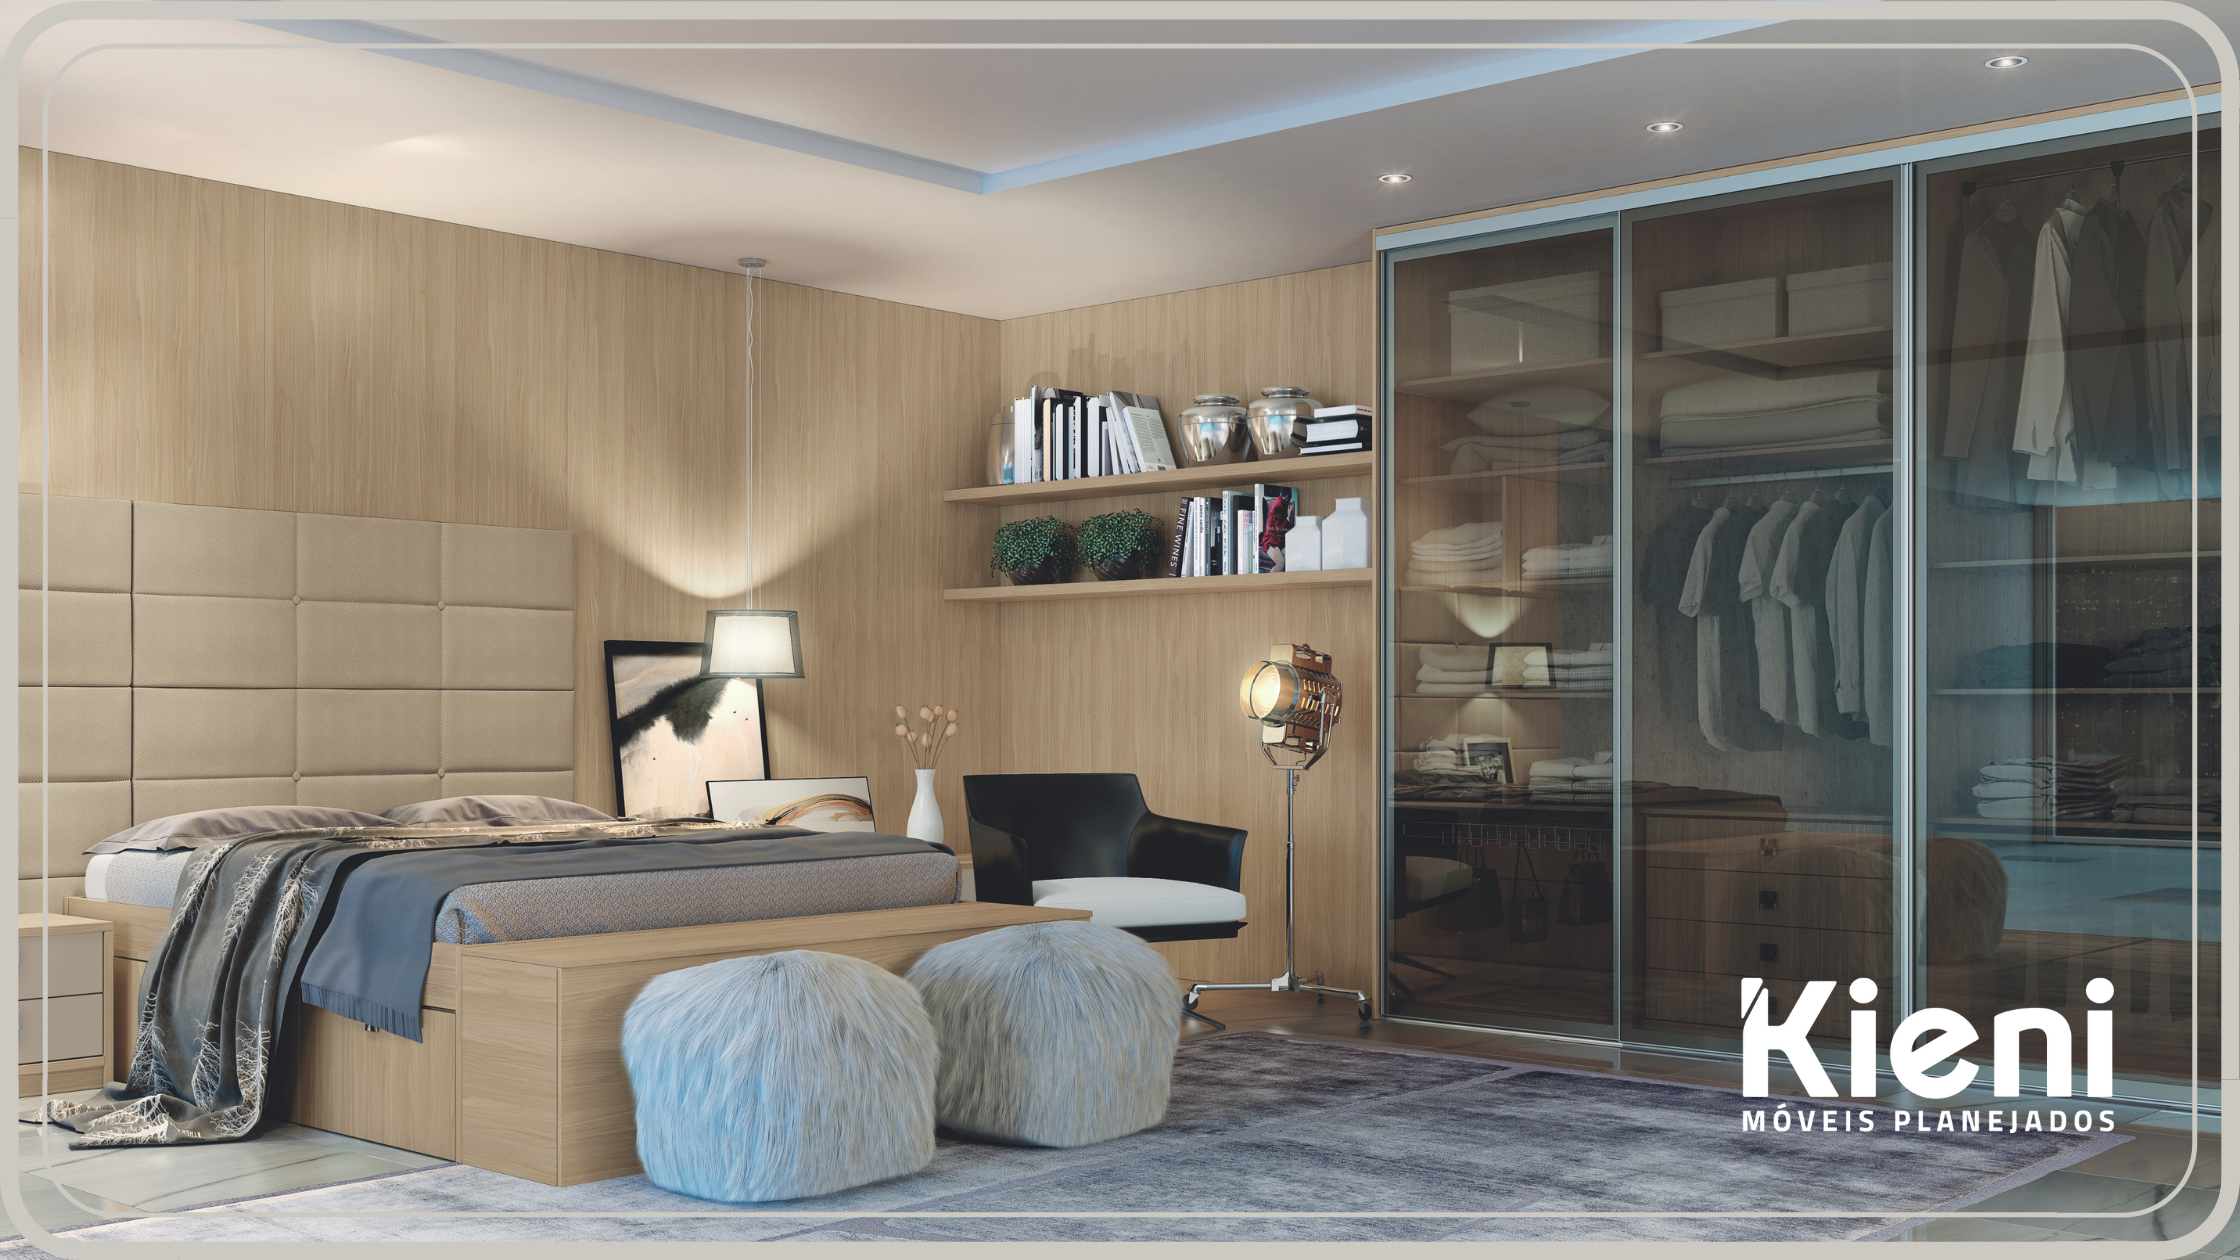 Ideias para quartos pequenos: dos móveis à decoração - ARTEX